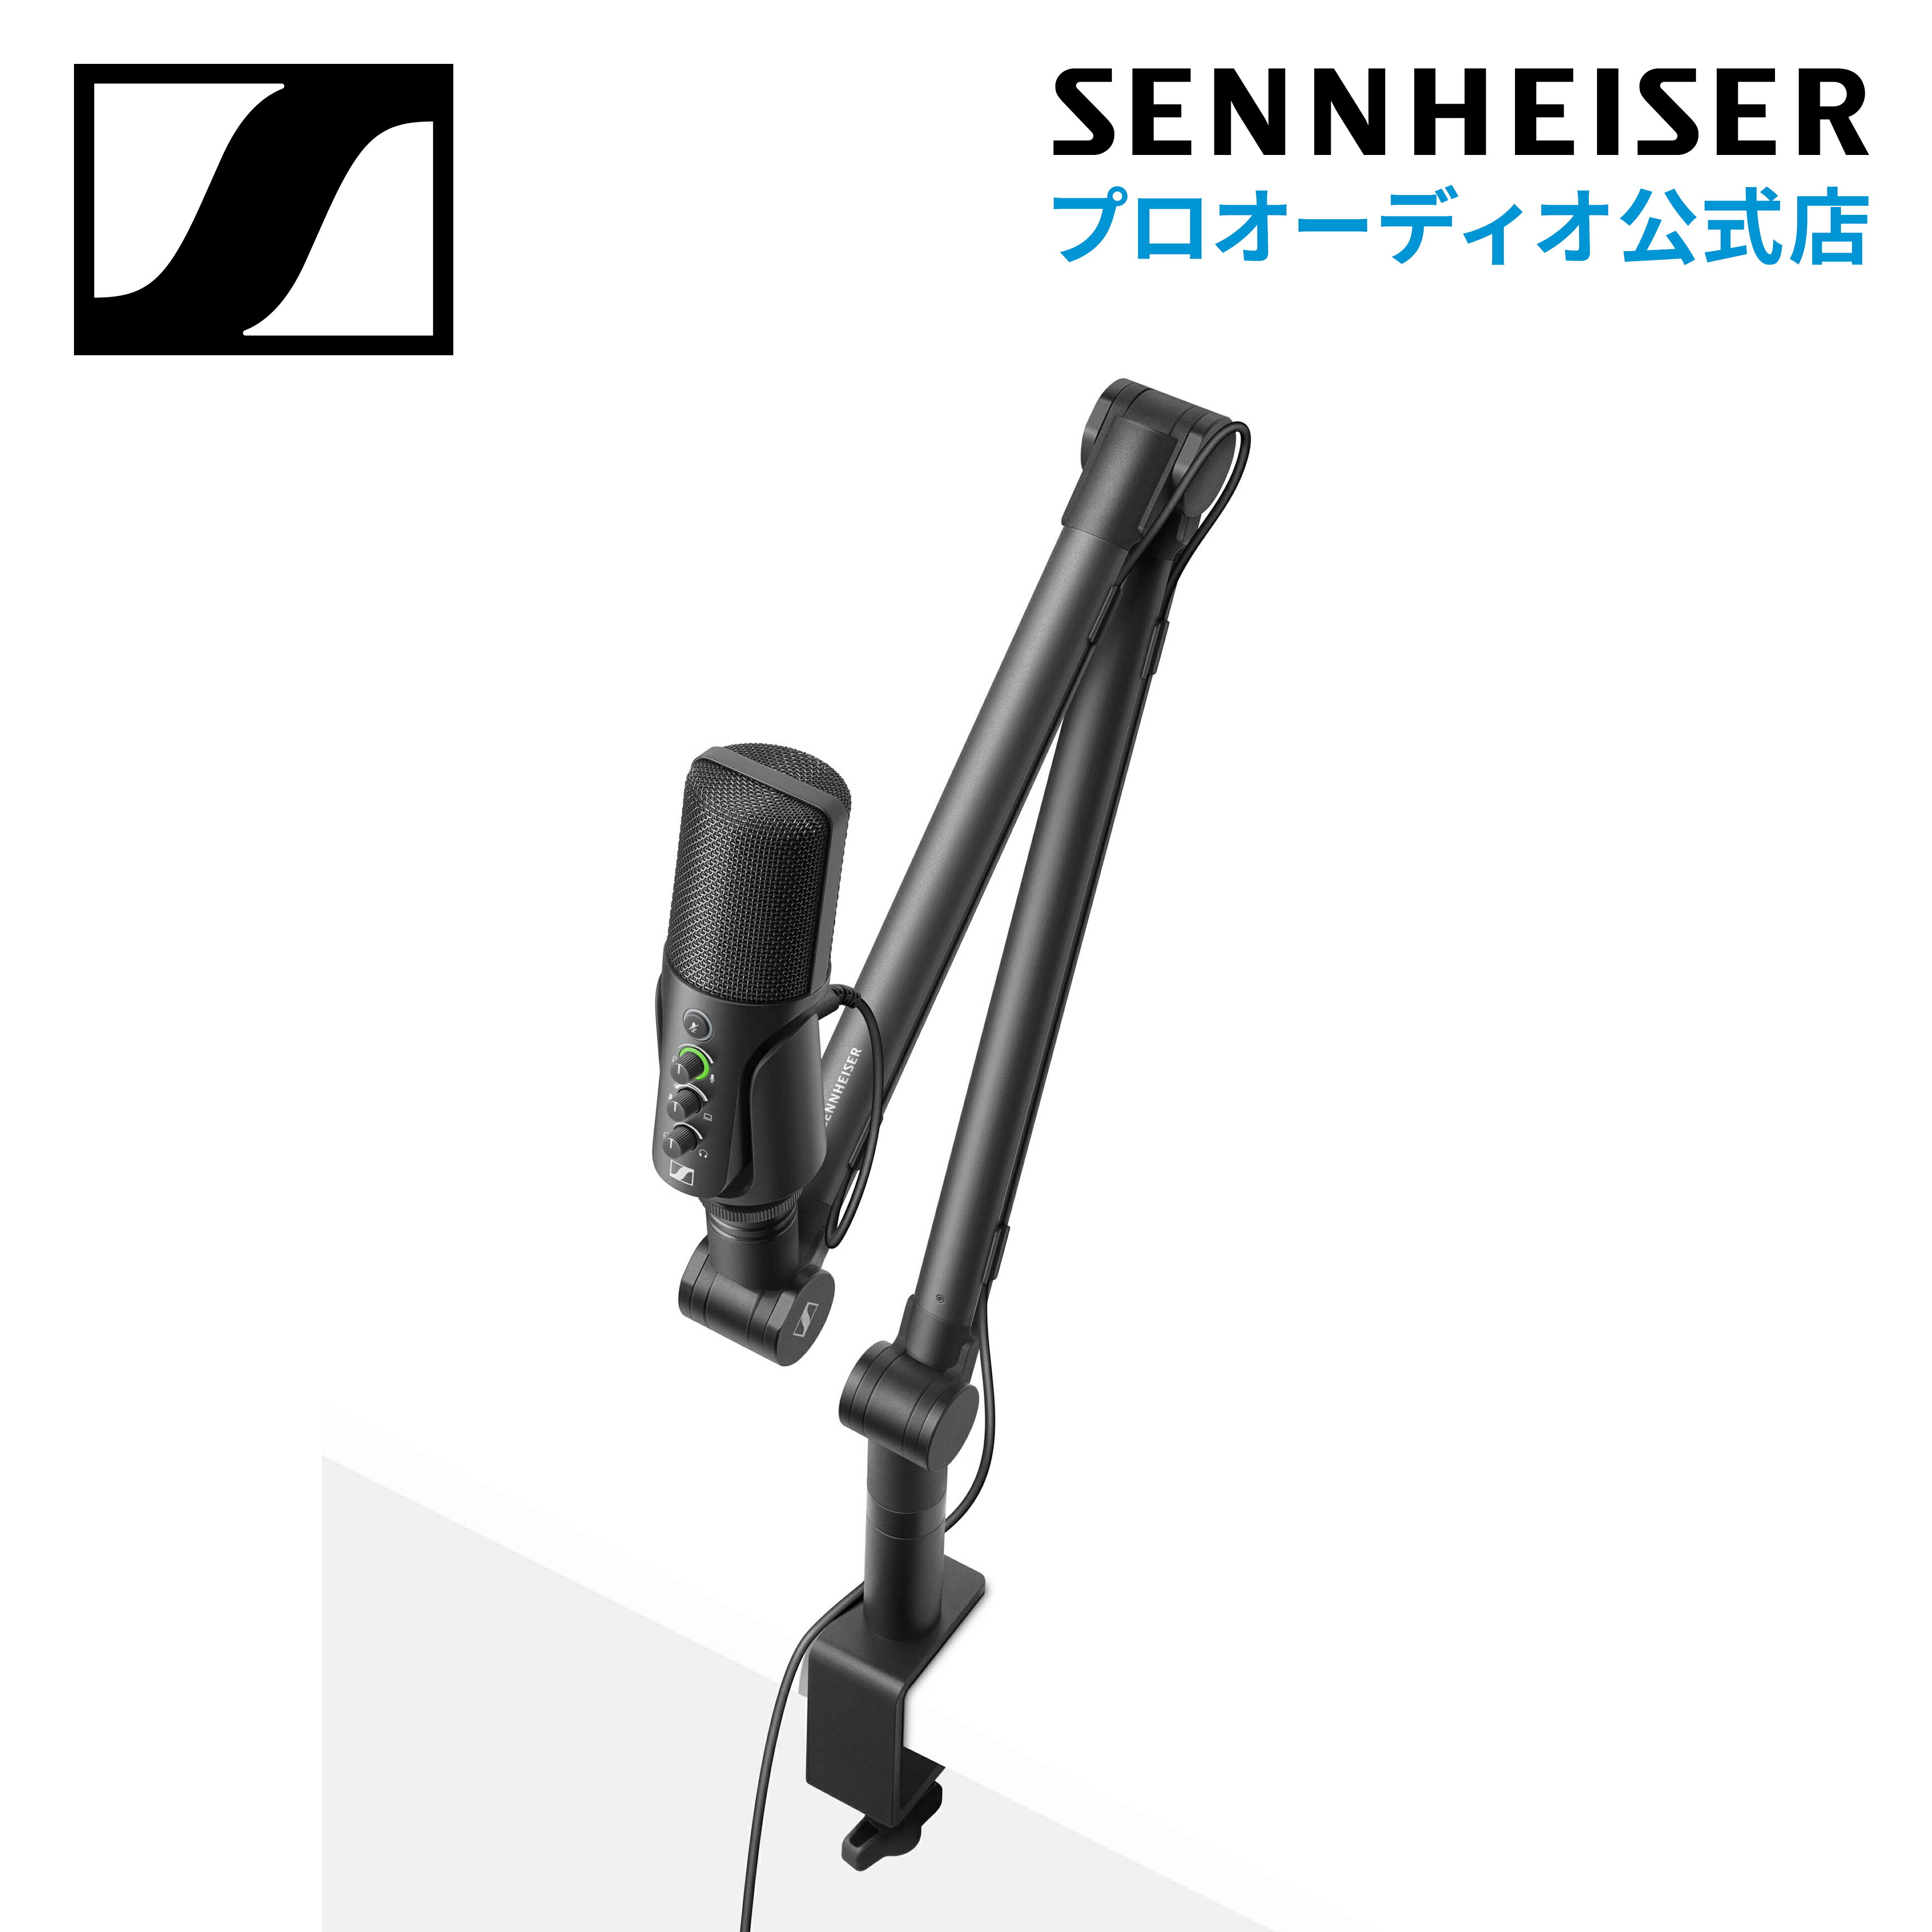 Sennheiser ゼンハイザー Profile Streaming Set 700100 メーカー保証2年 送料無料 USBマイクロホン ポッドキャスター ストリーマー ゲーマー